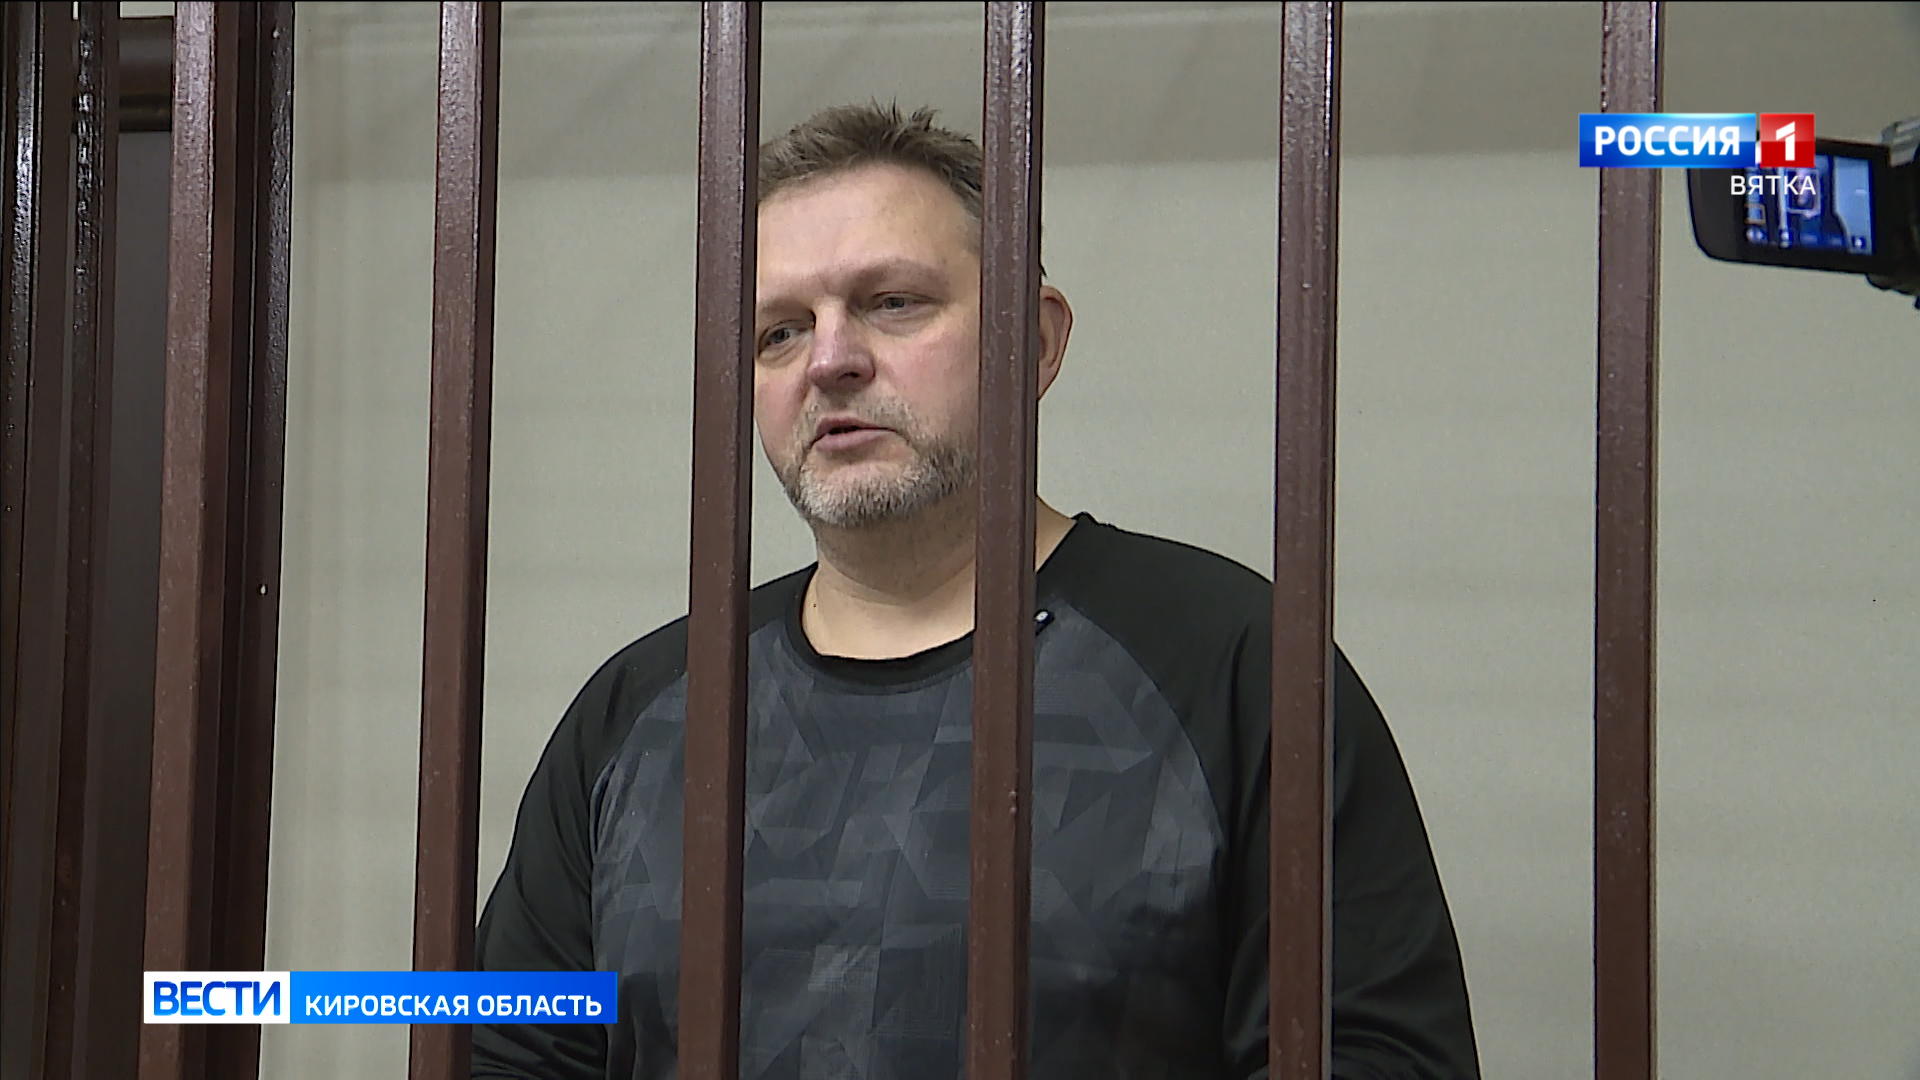 В Кирове вынесен очередной приговор экс-губернатору Никите Белых